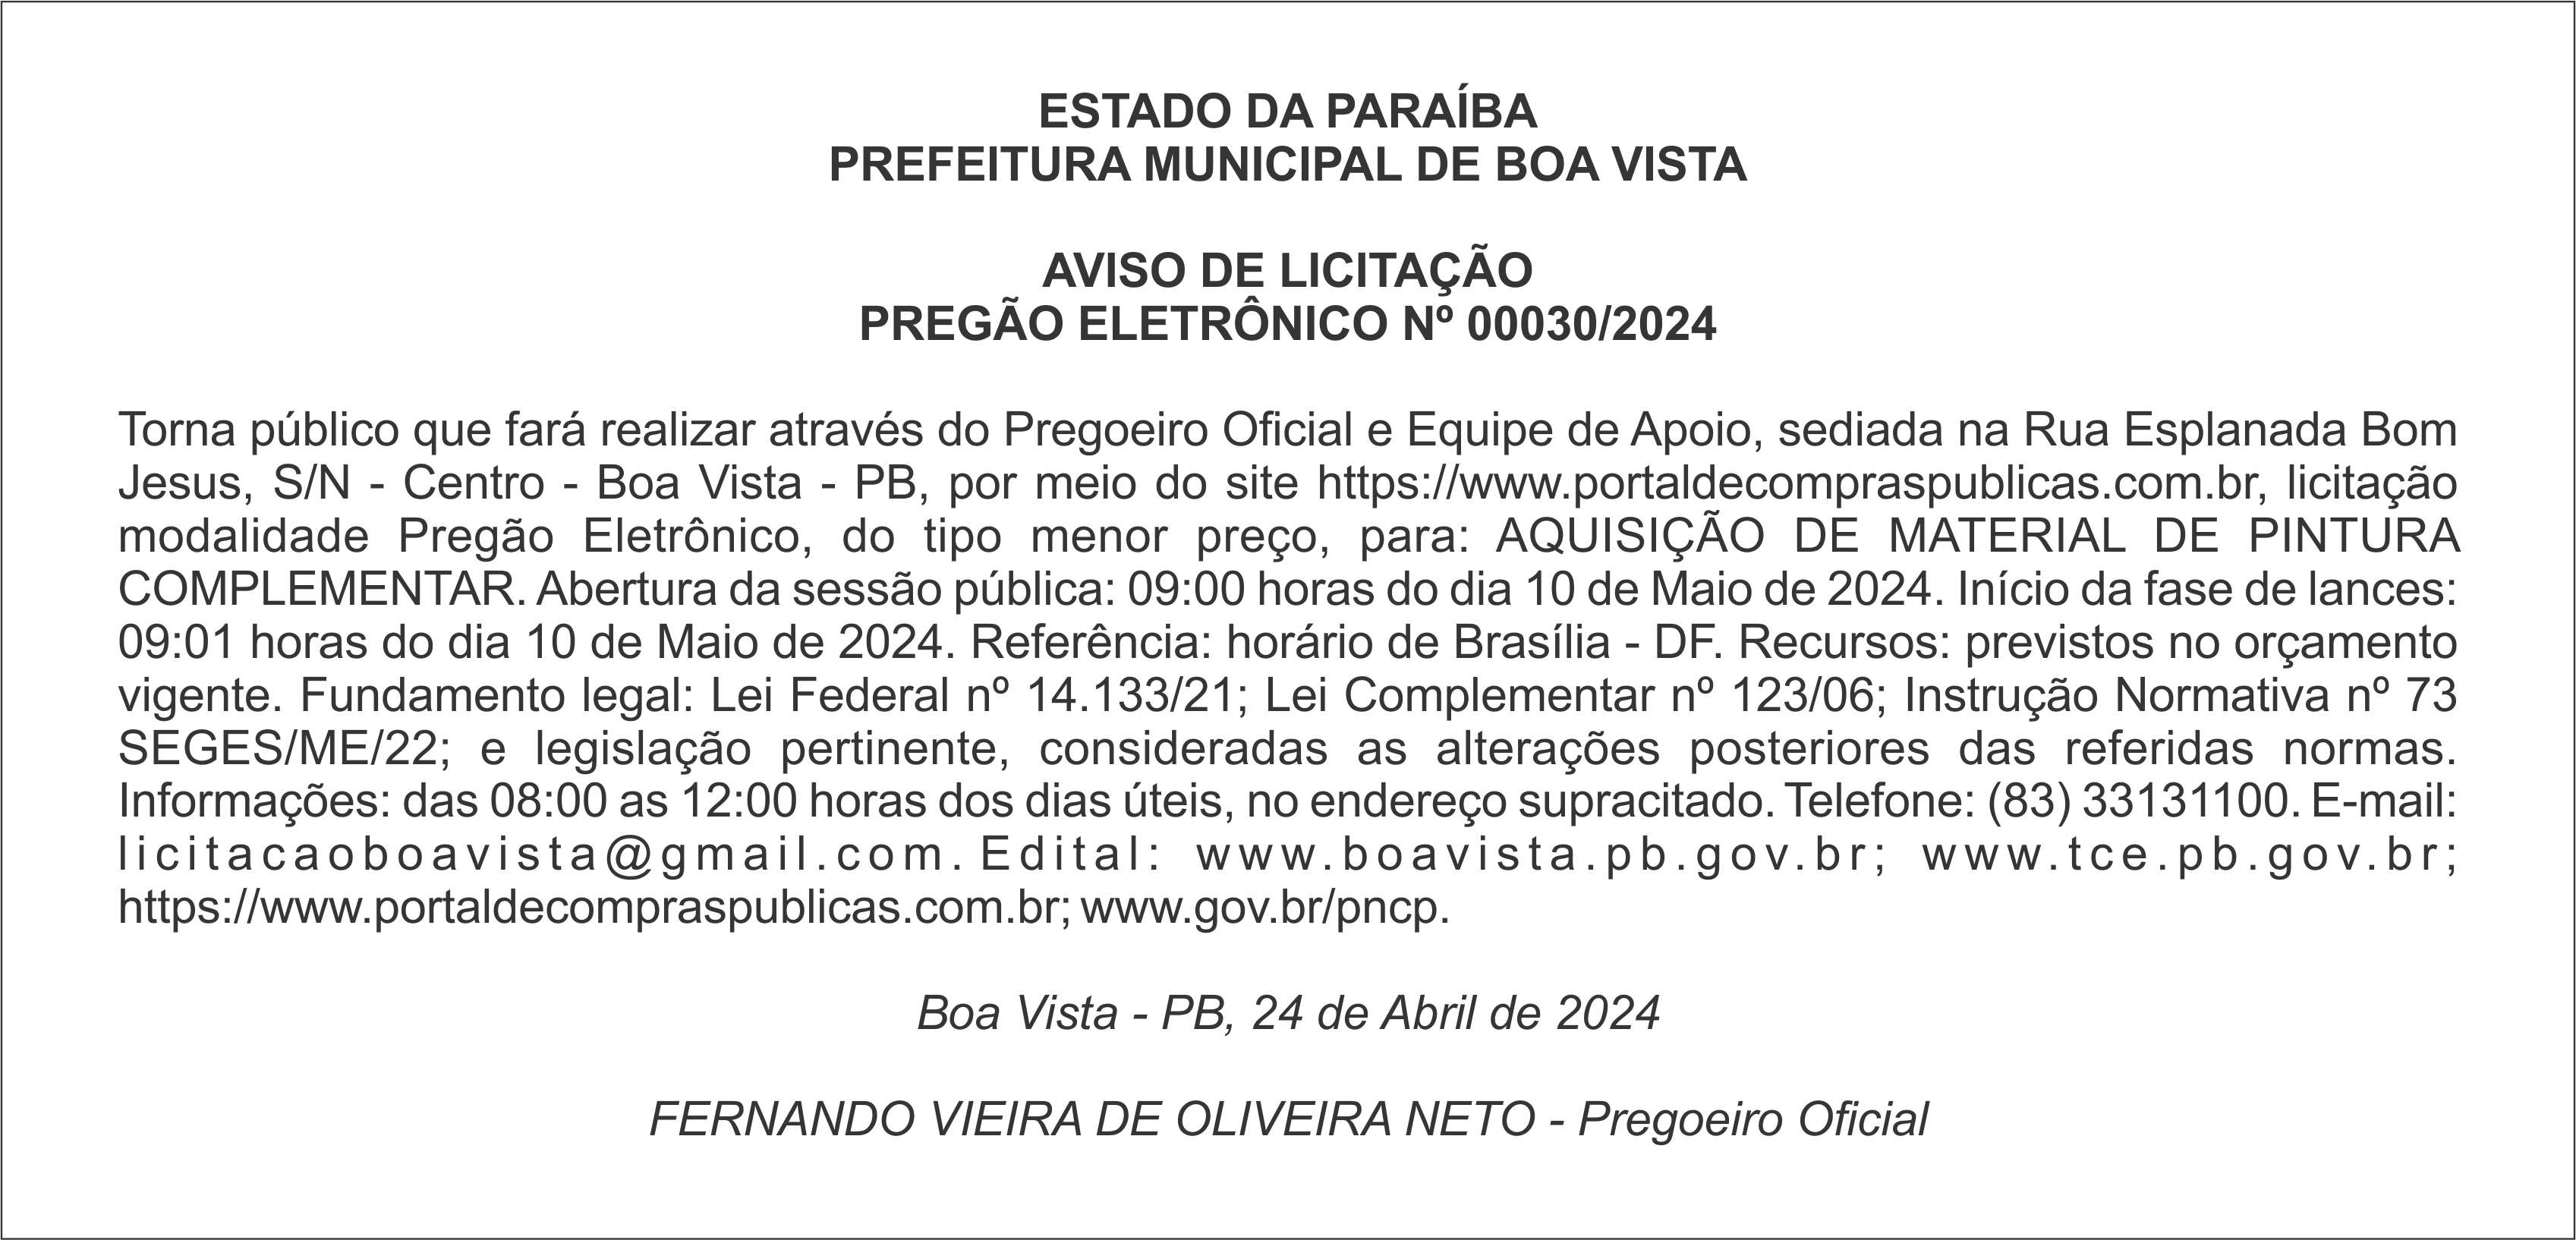 PREFEITURA MUNICIPAL DE BOA VISTA – AVISO DE LICITAÇÃO – PREGÃO ELETRÔNICO Nº 00030/2024